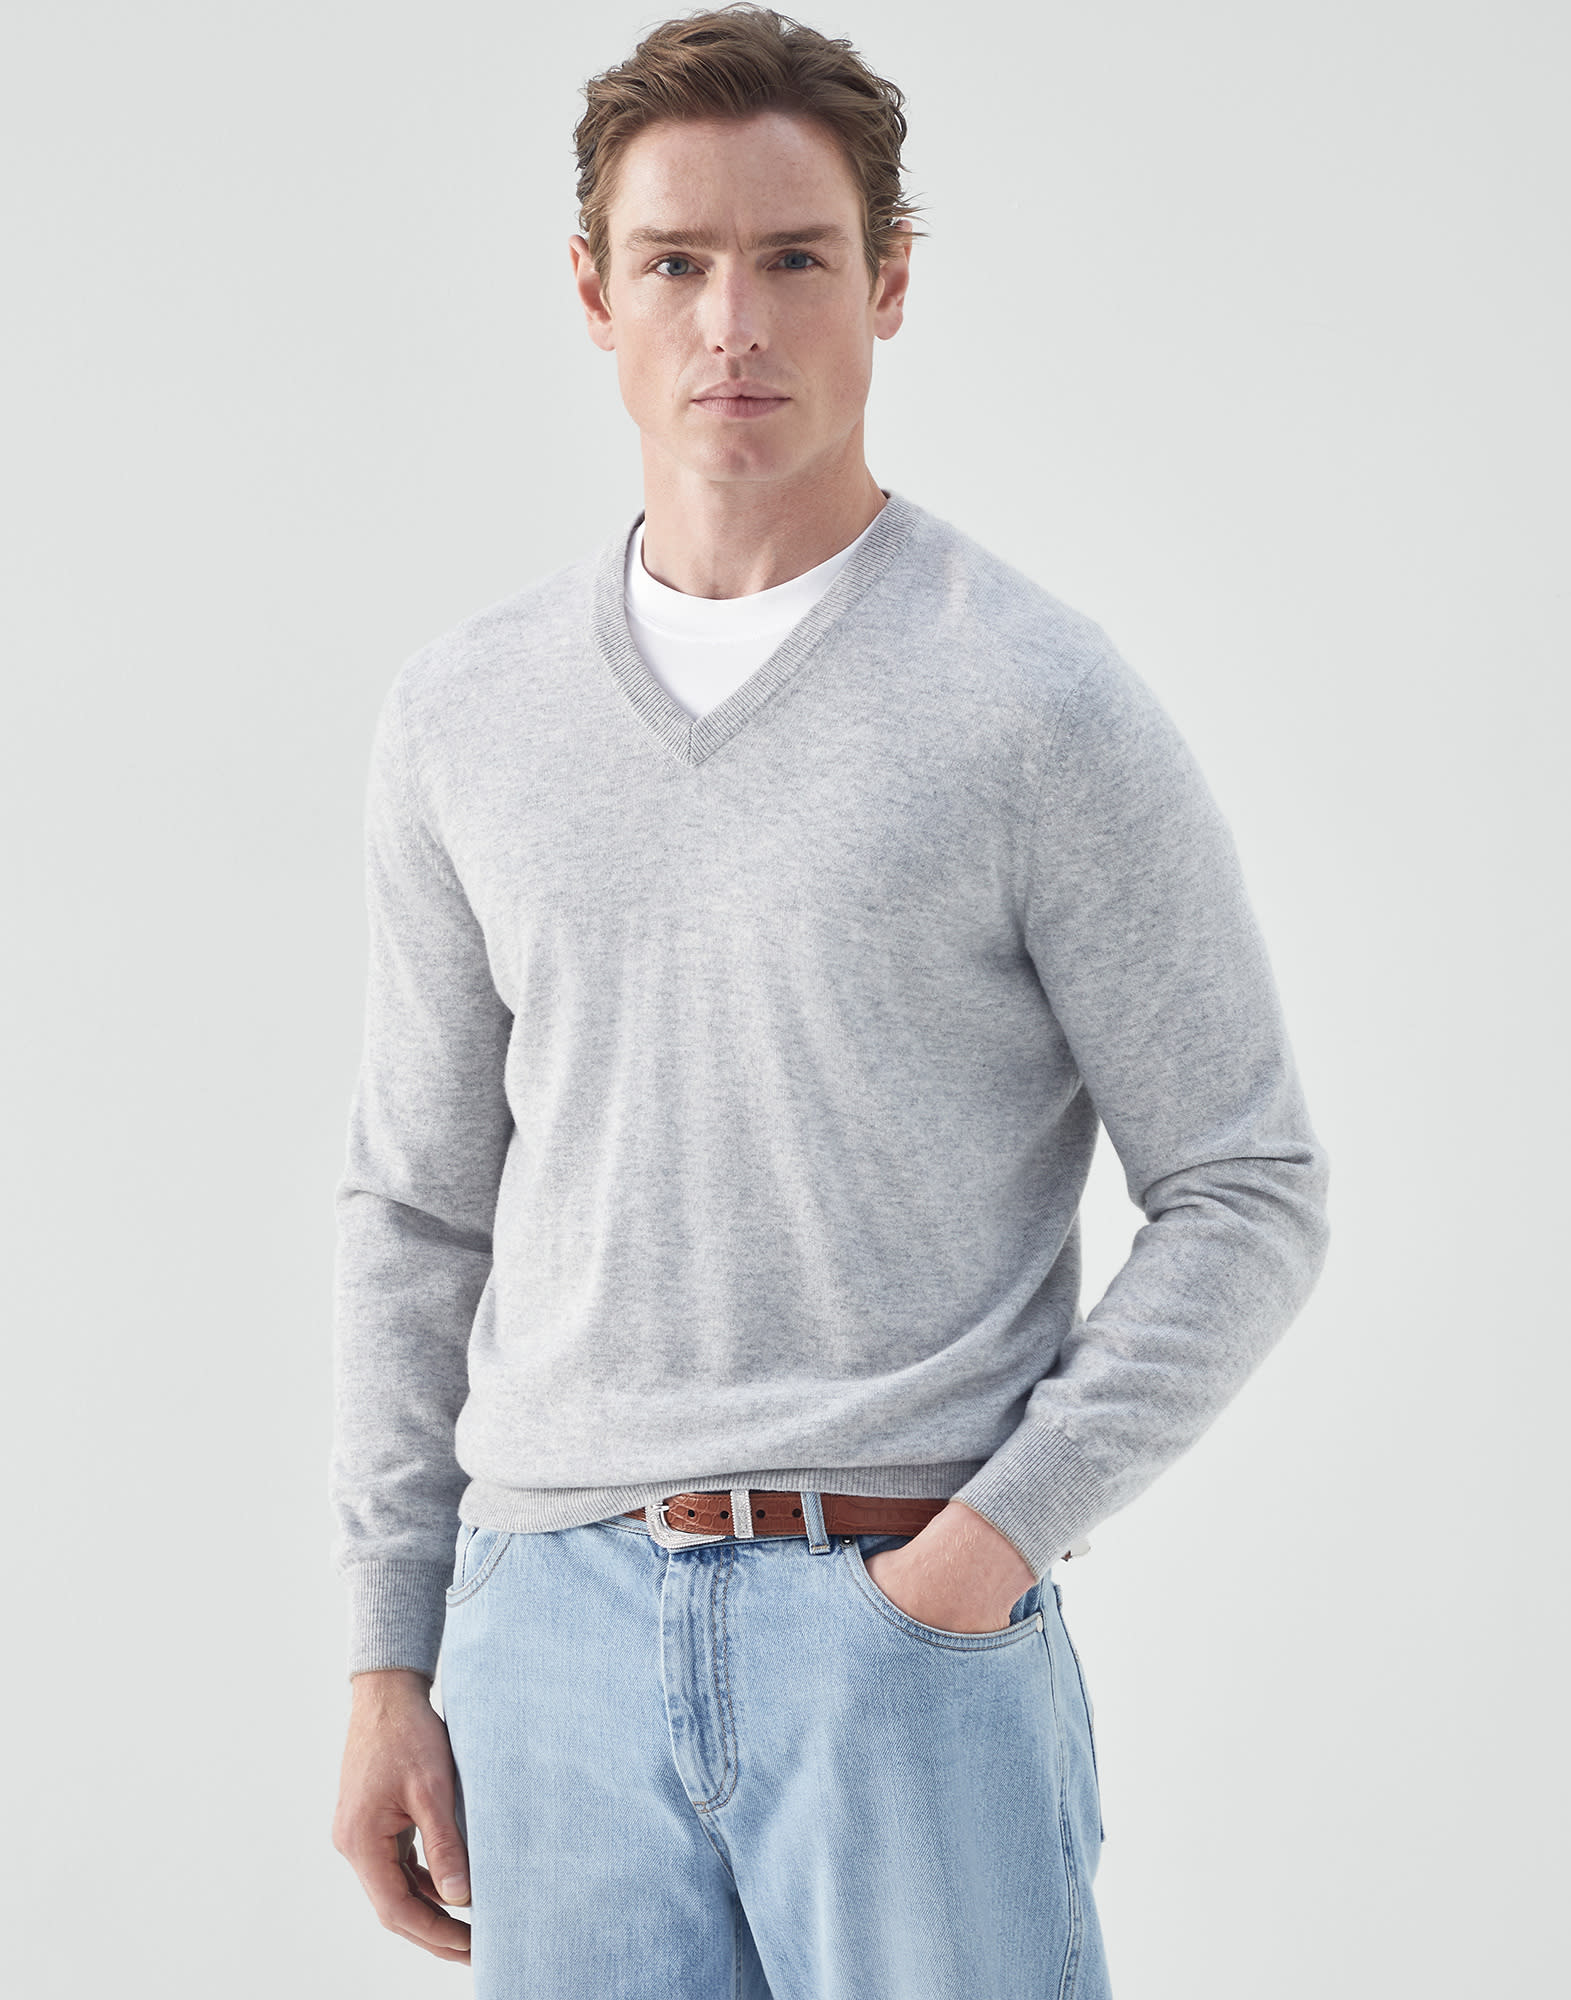 Cashmere sweater Pebble Man - Brunello Cucinelli